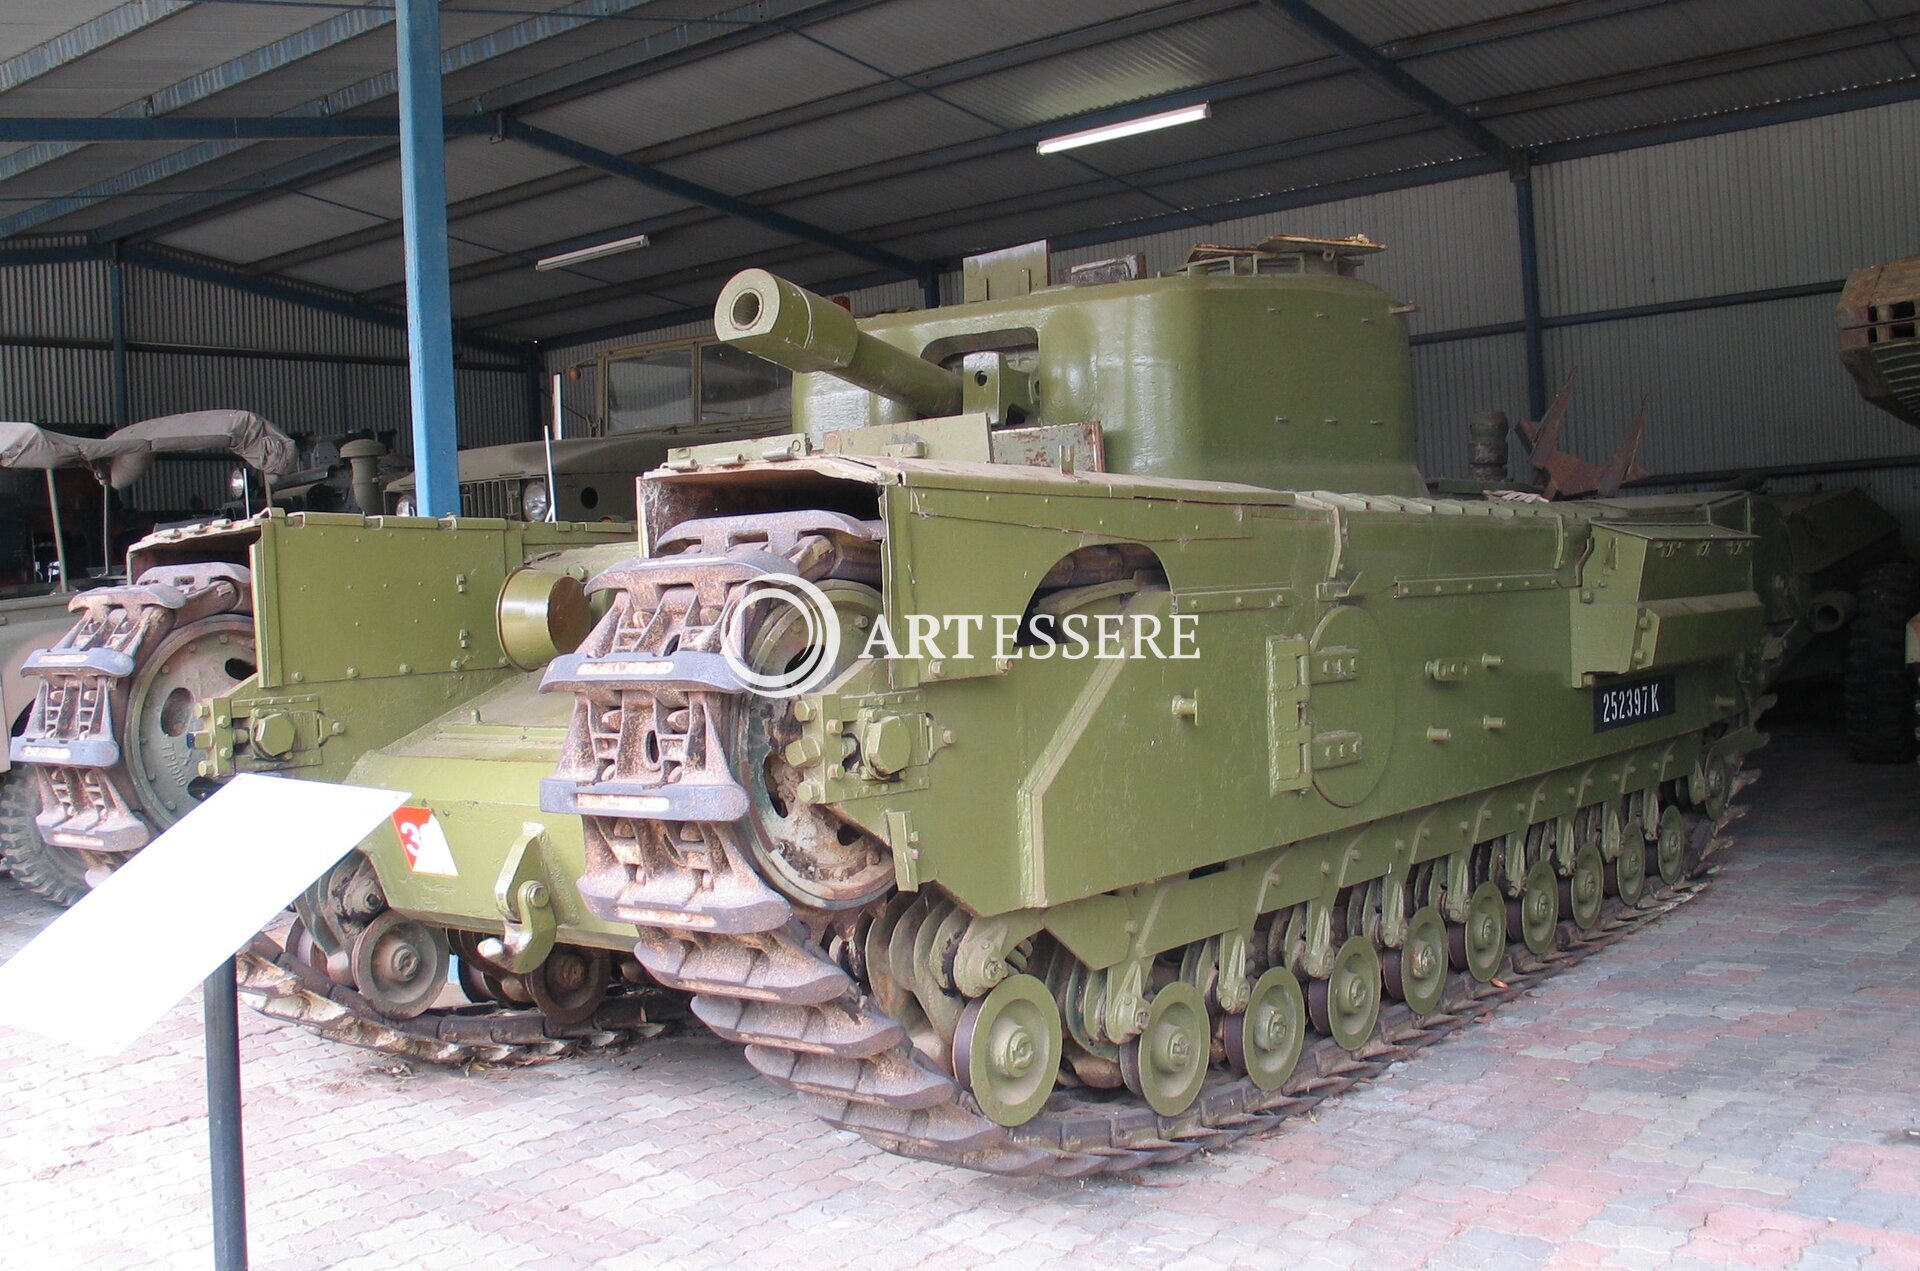 Army Tank Museum